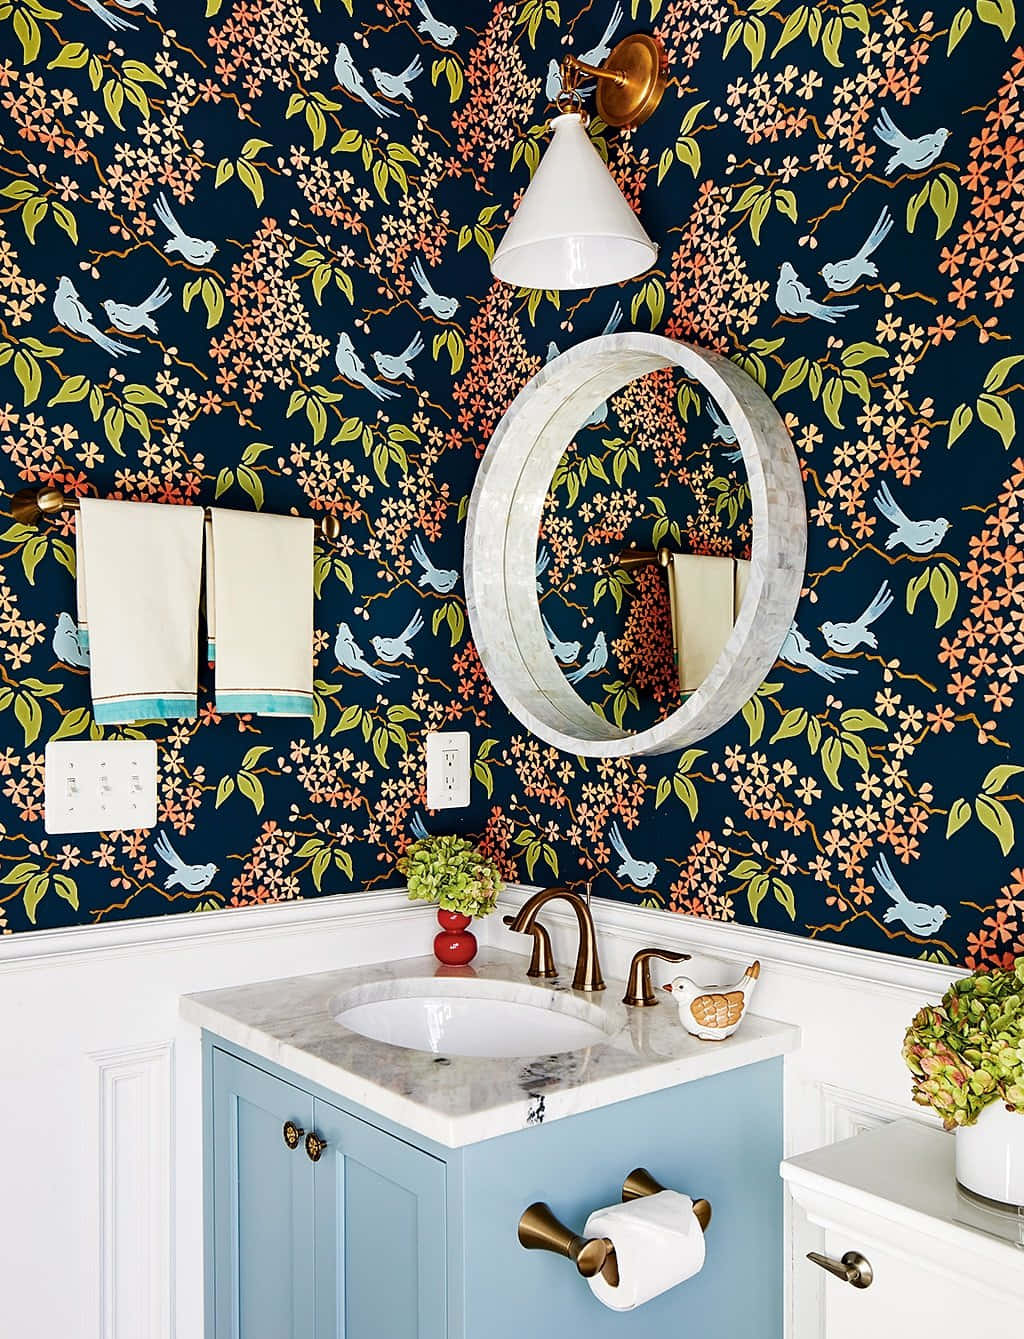 Bathroom Bird Patterned Walls Wallpaper